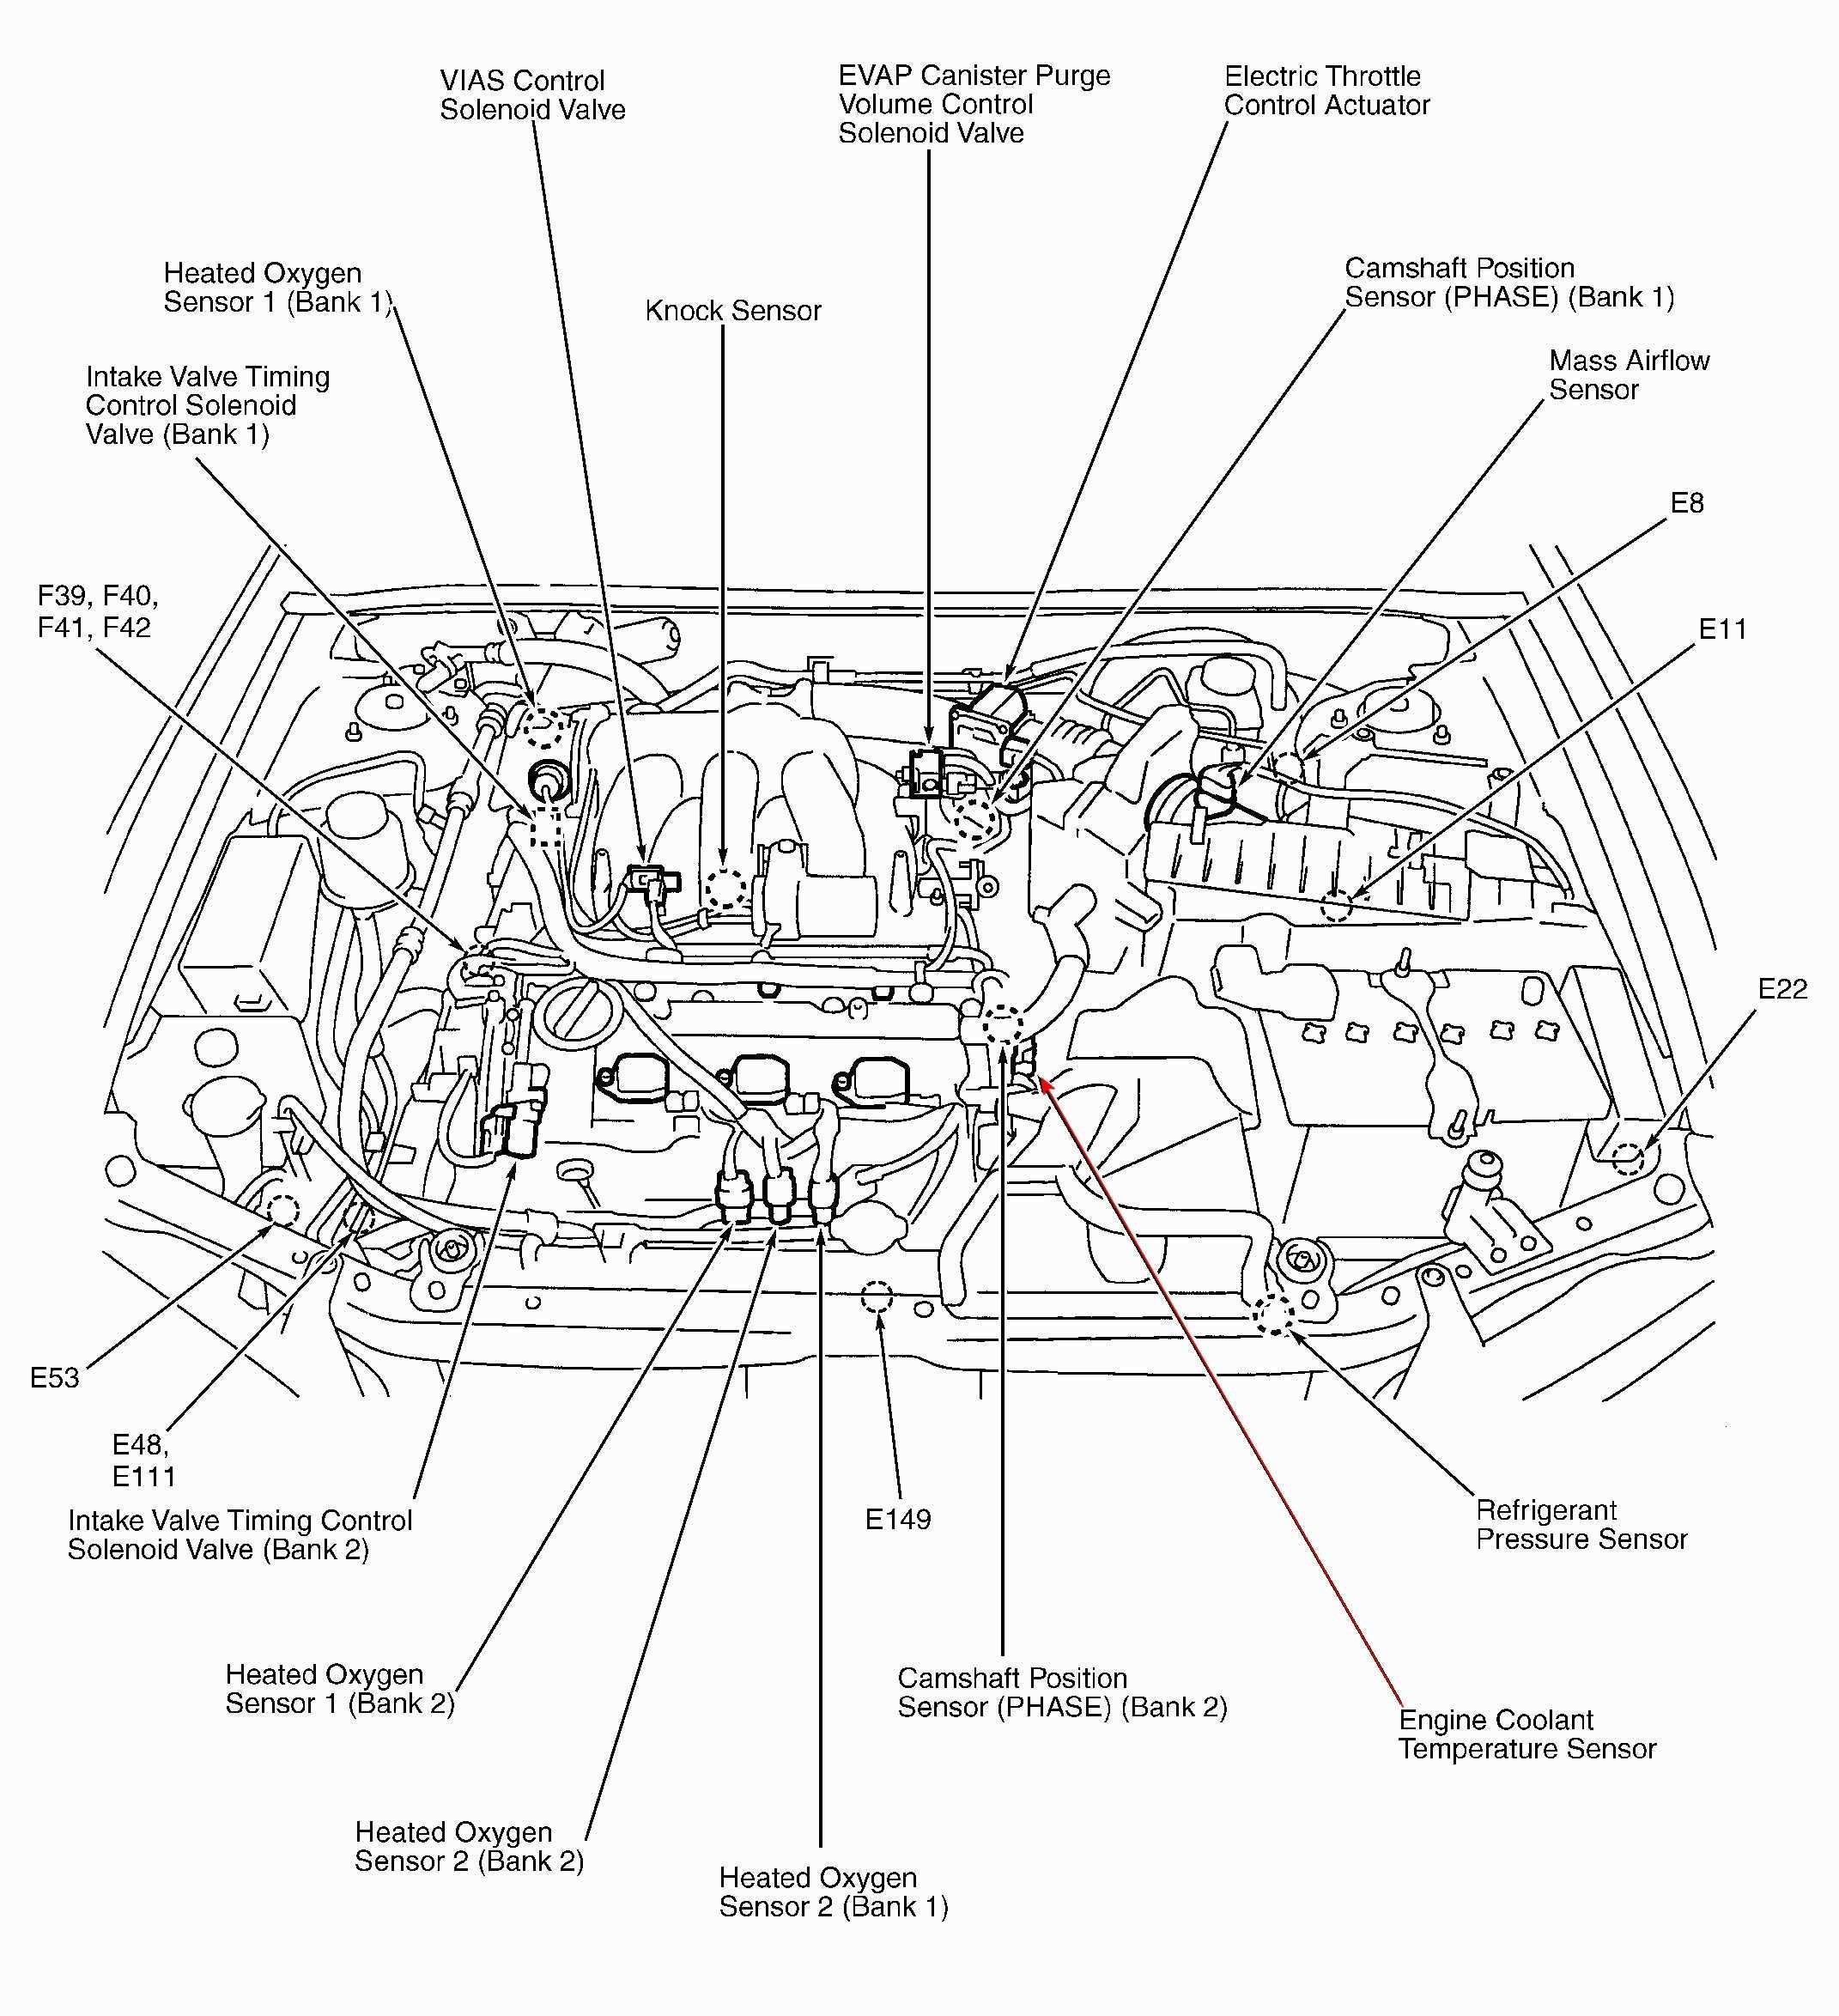 Toyota 3 0 V6 Engine Diagram Mazda 3 0 V6 Engine Diagram 2003 Wiring Diagrams the Of Toyota 3 0 V6 Engine Diagram